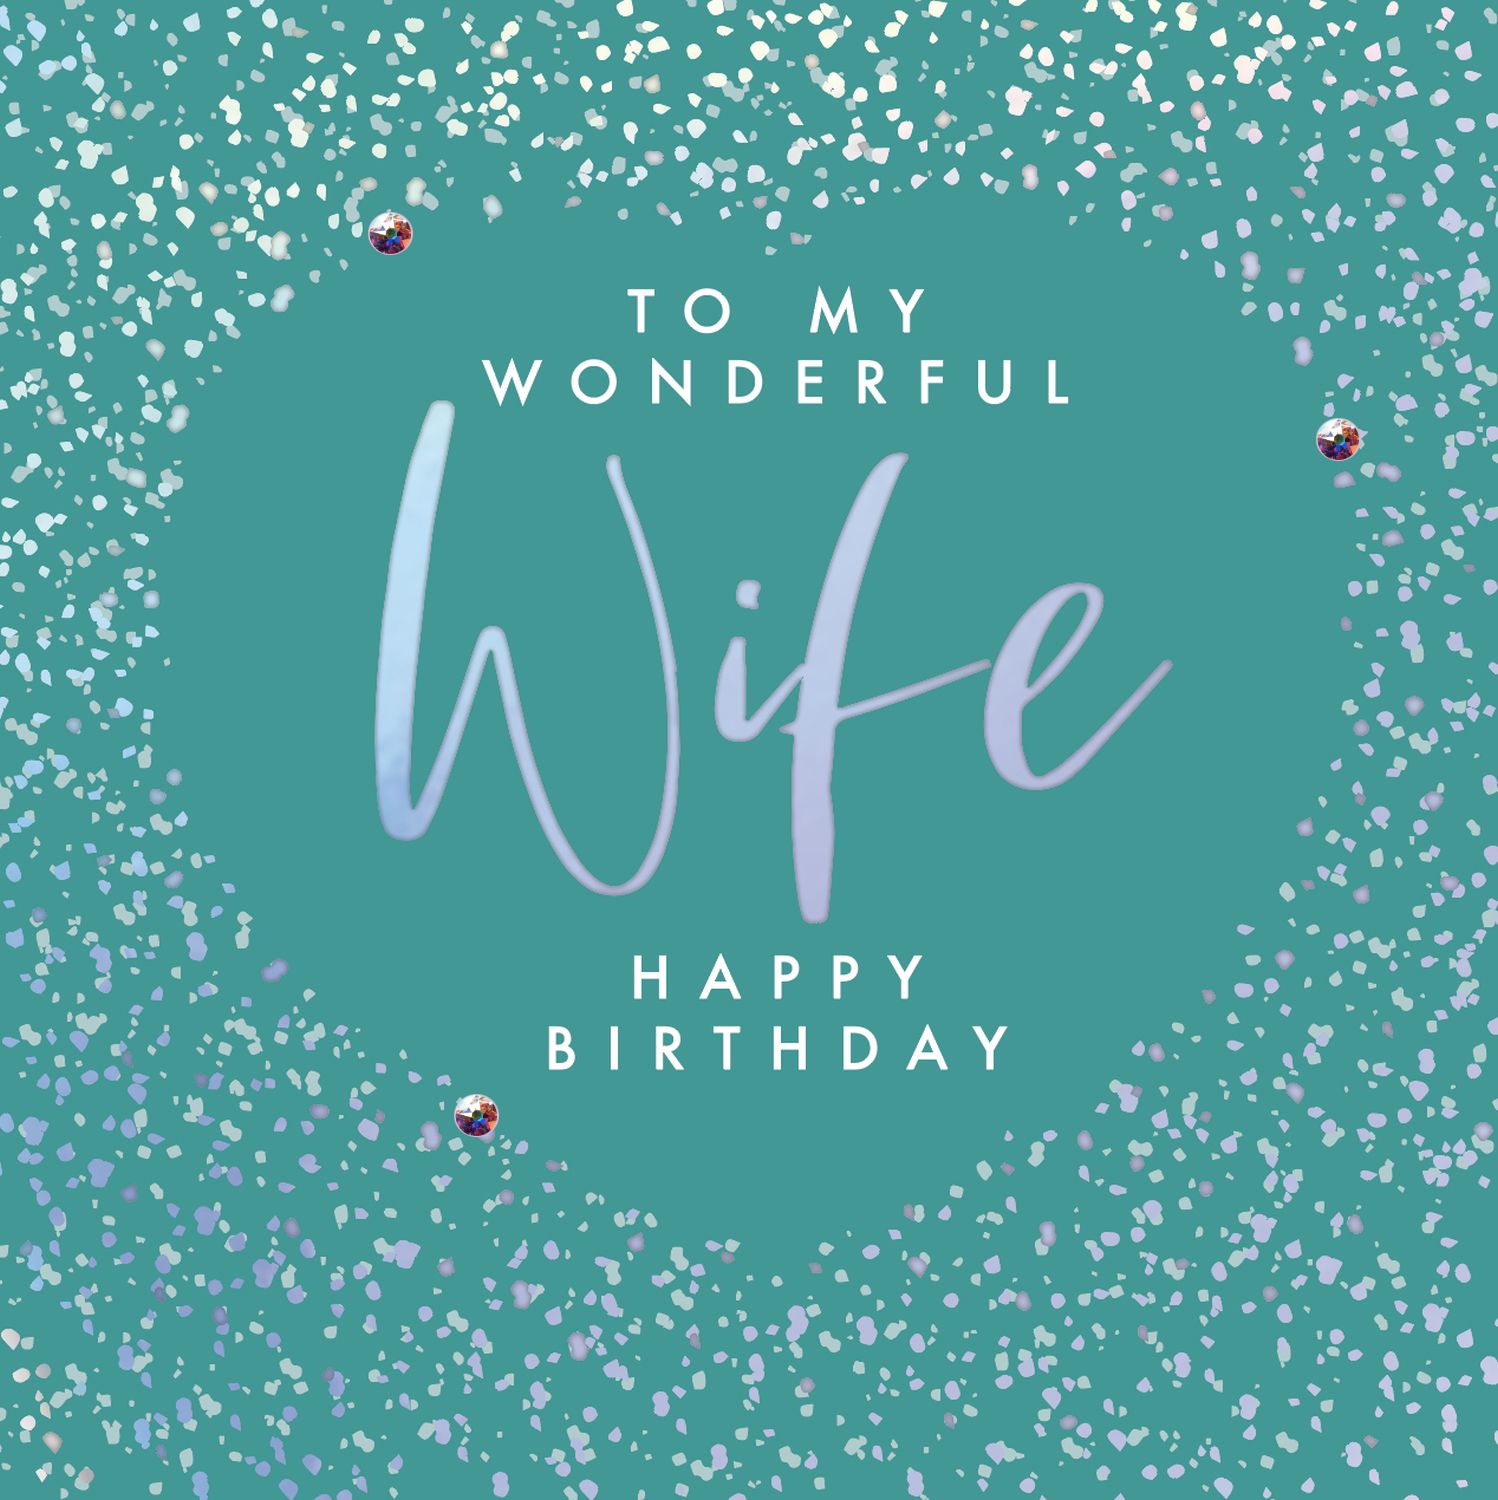 wife-birthday-cards-to-my-wonderful-wife-happy-birthday-free-nude